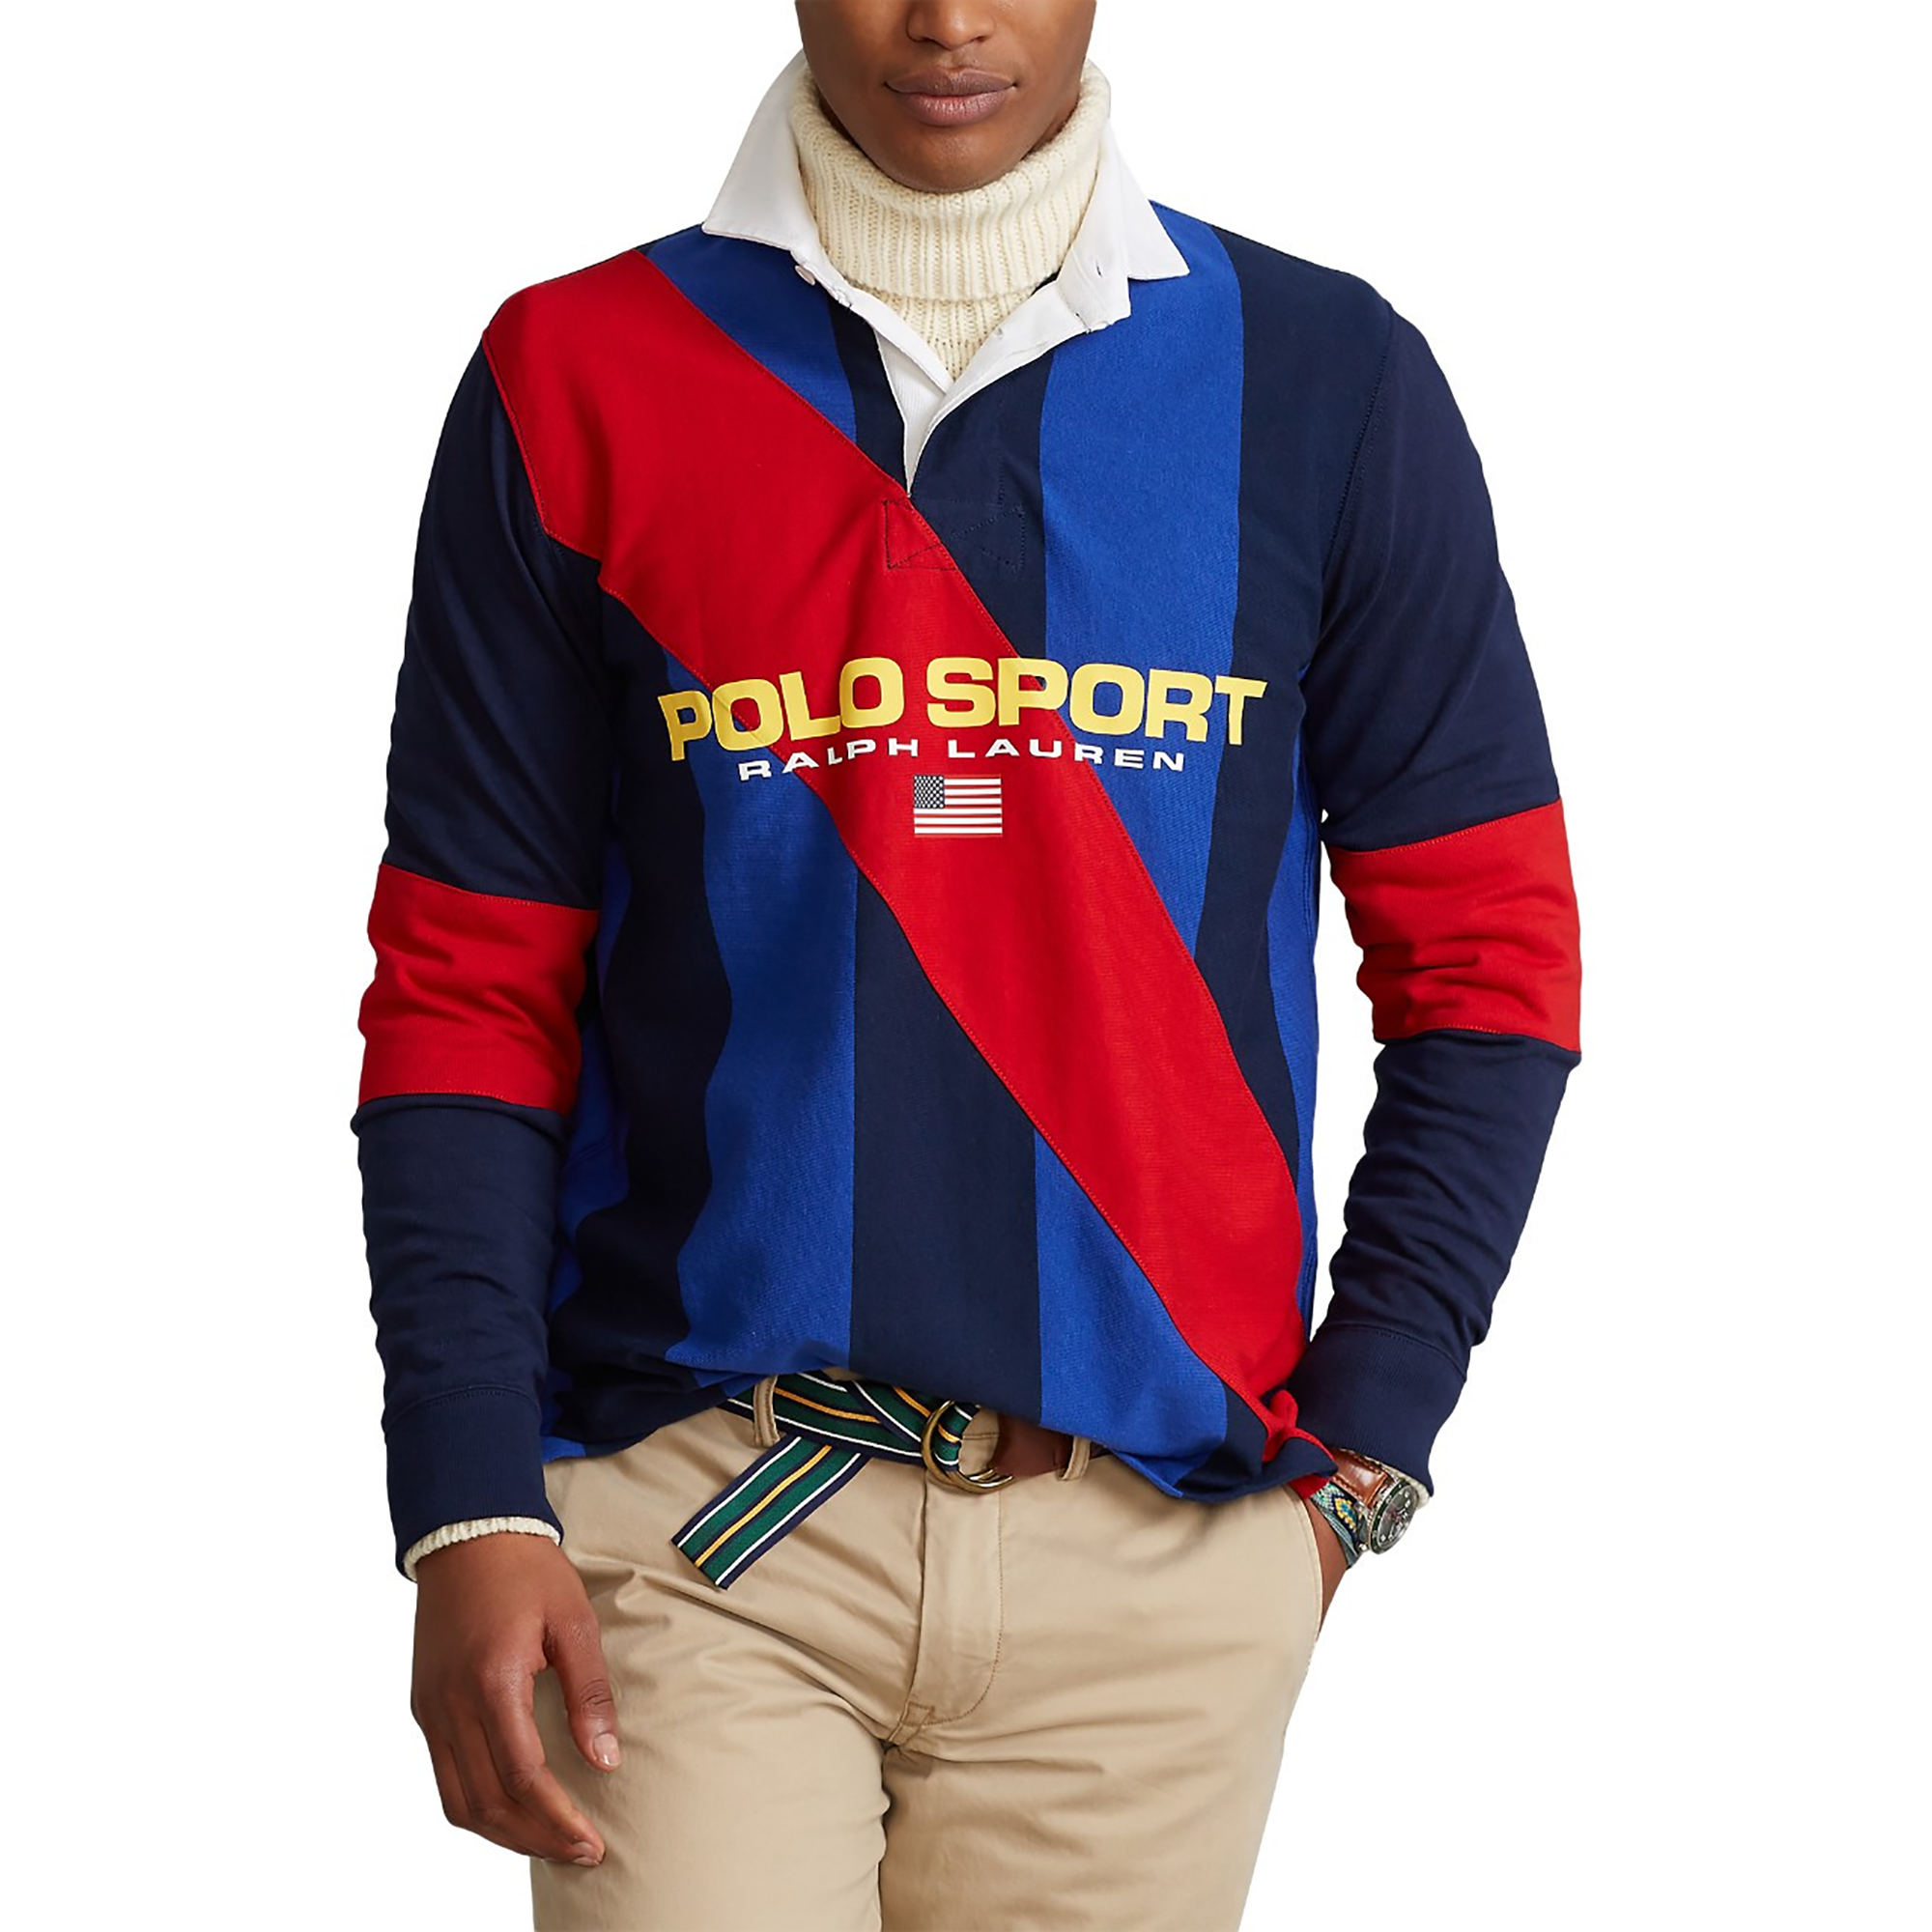 Polo Ralph Lauren Long Sleeve Rugby Shirt - Men's